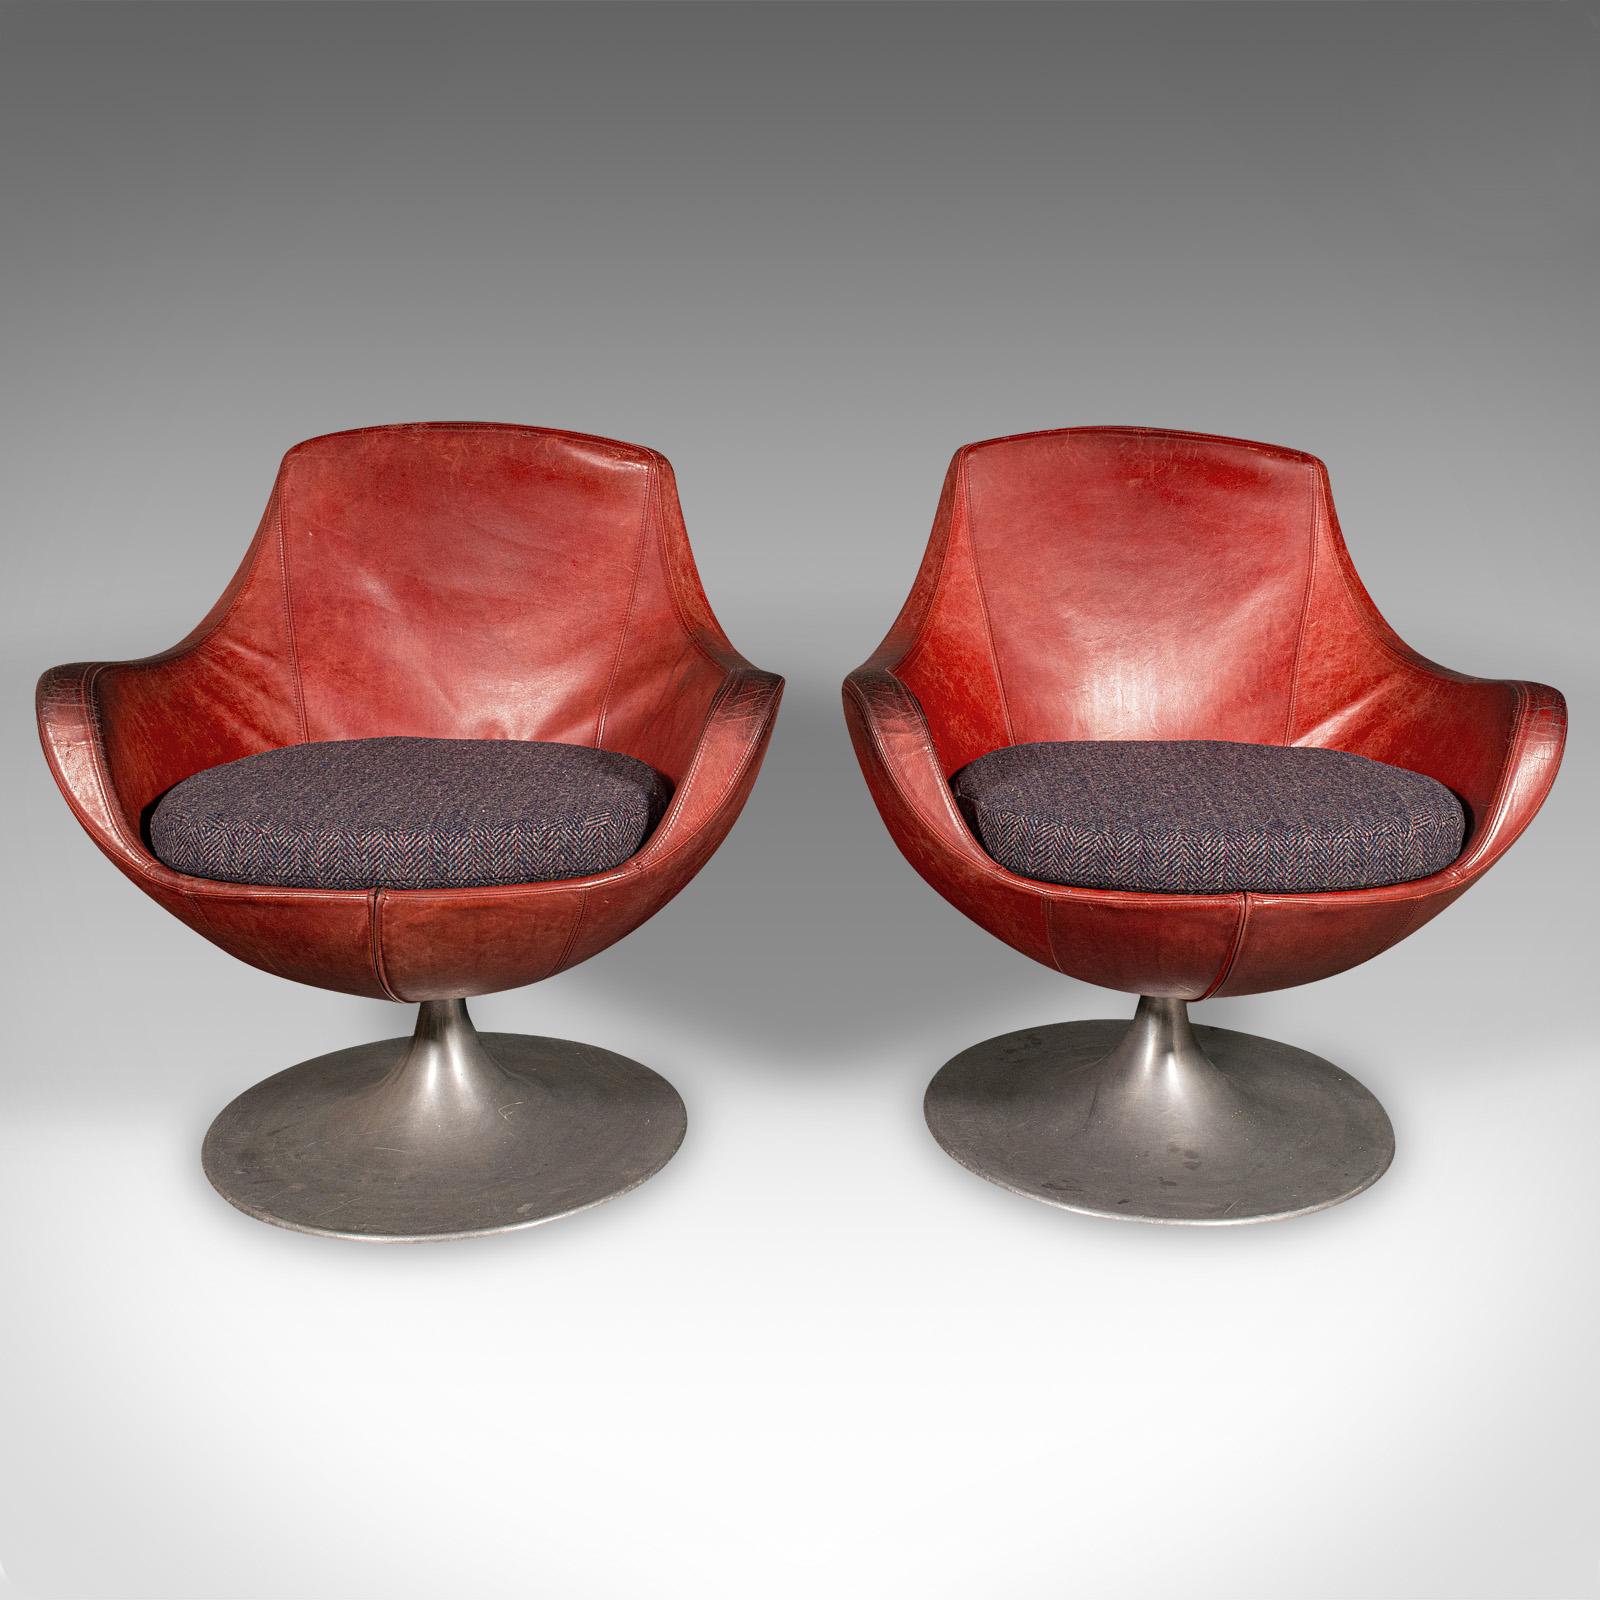 Il s'agit d'une paire de chaises de baignoire pivotantes vintage. Siège de salon italien en cuir avec coussin rembourré, datant de la fin du XXe siècle, vers 1970.

Deux chaises de baignoire accueillantes, pour agrémenter votre salon ou votre coin